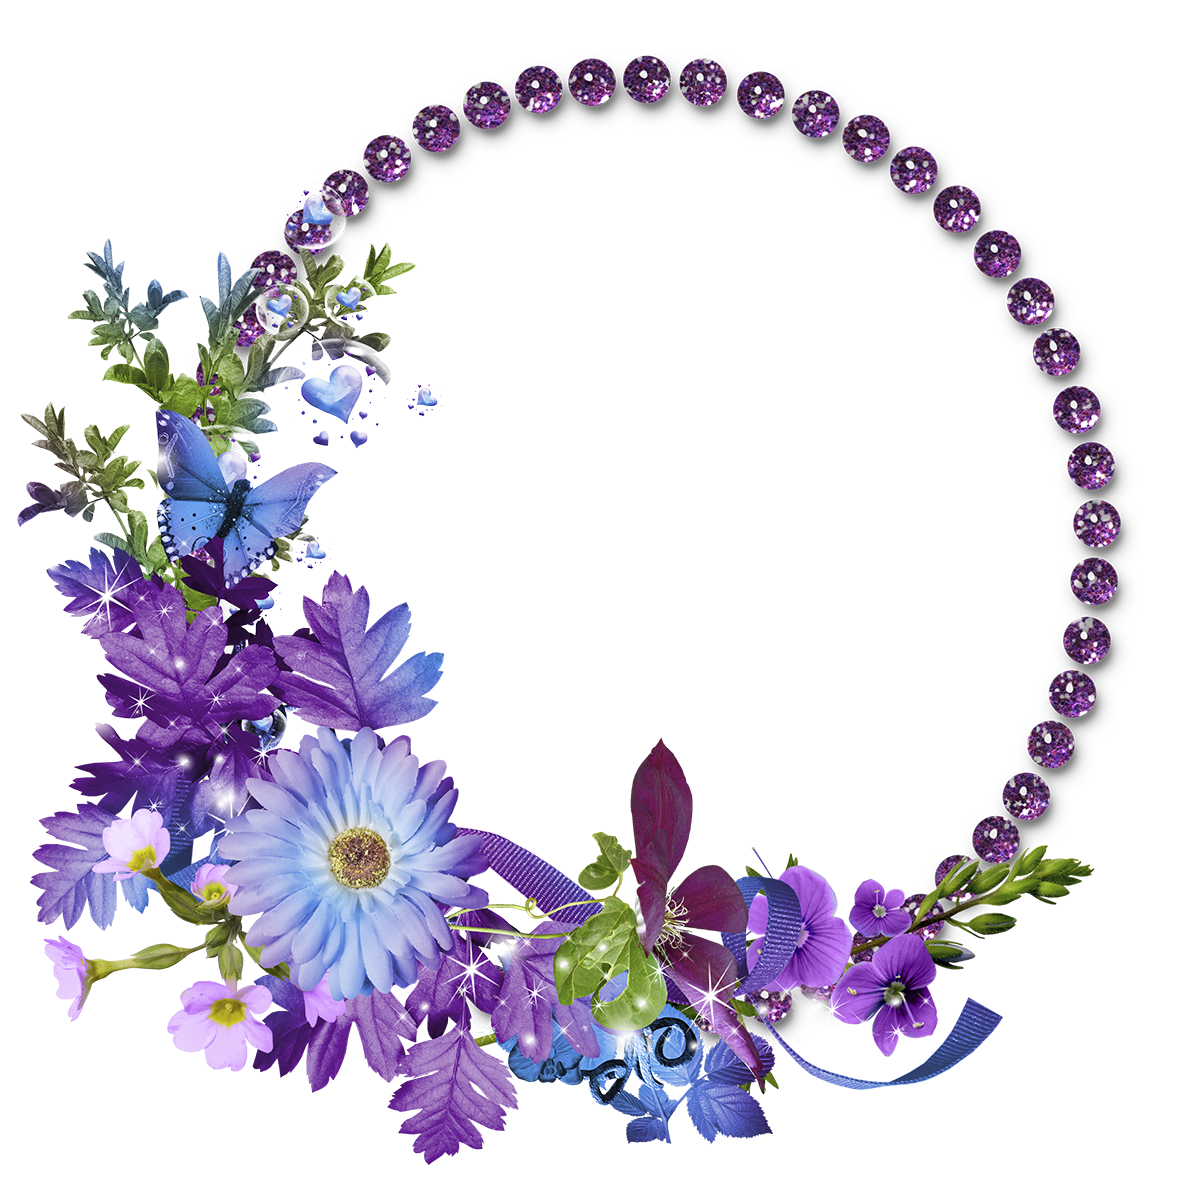 Floral Round Frame Transparent Image PNG Image